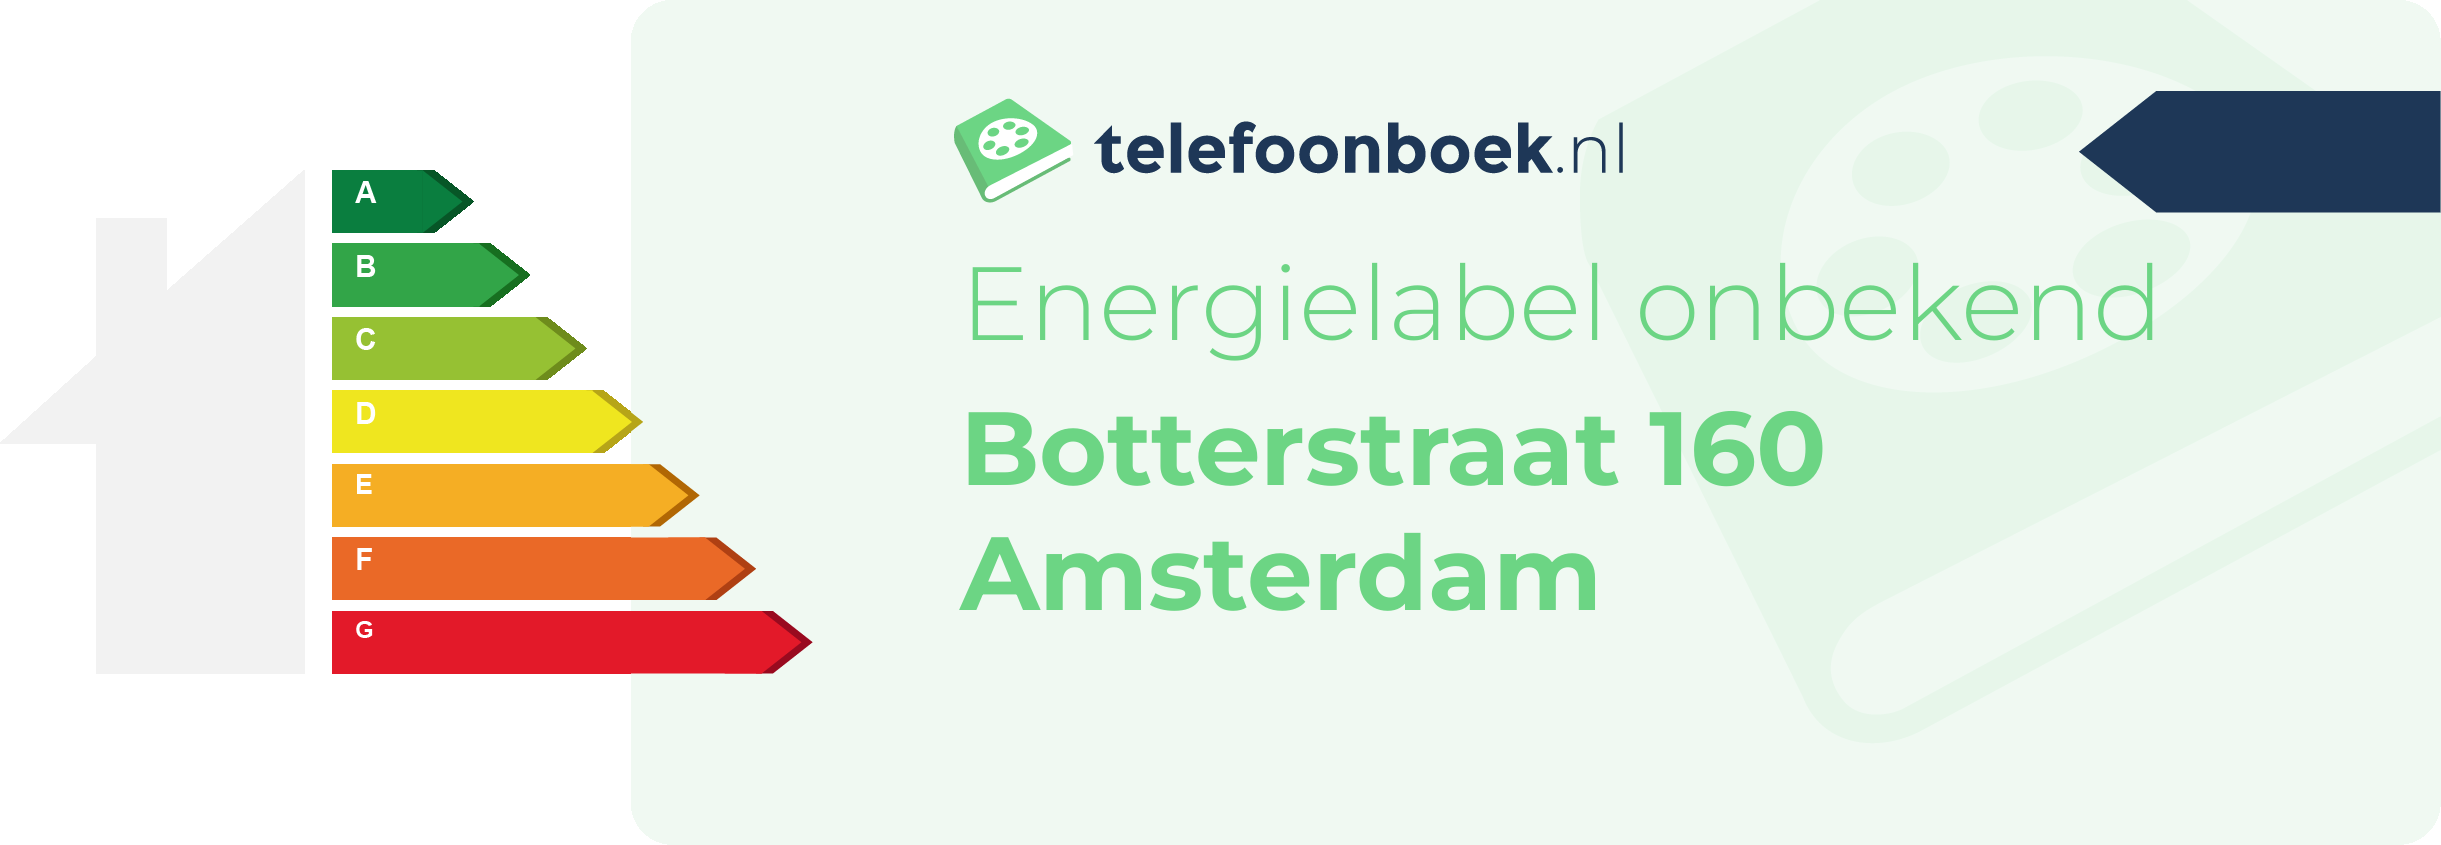 Energielabel Botterstraat 160 Amsterdam